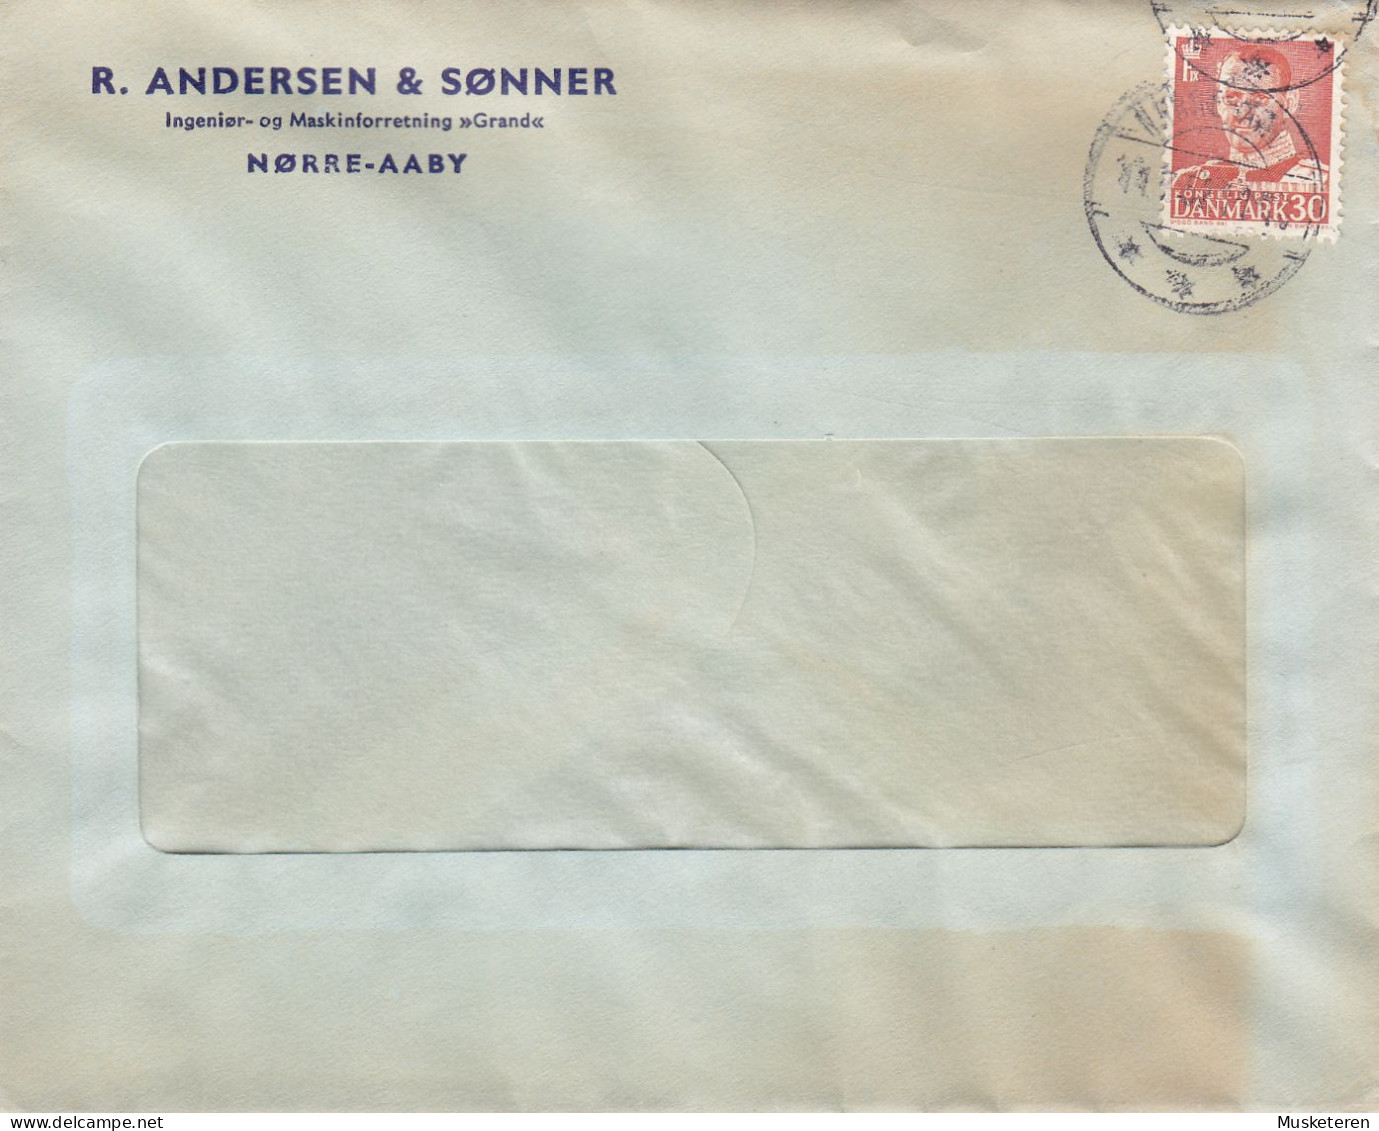 Denmark R. ANDERSEN & SØNNER Ingeniør- Og Maskinforretning 'GRAND' Brotype NØRRE-AABY 1952 Cover Brief Lettre - Briefe U. Dokumente